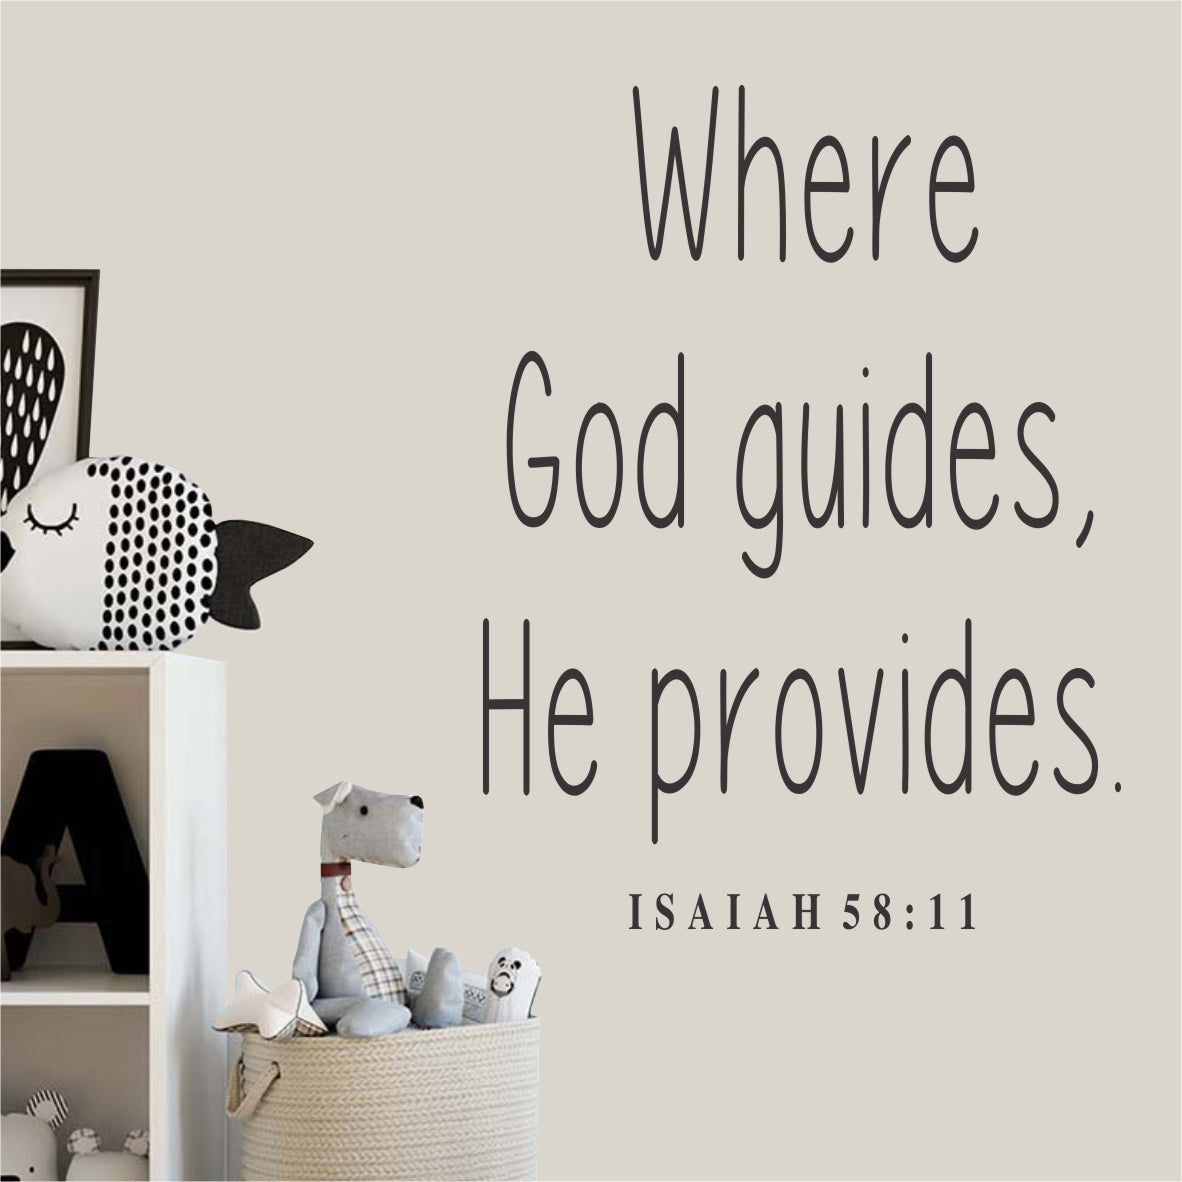 WHERE GOD GUIDES